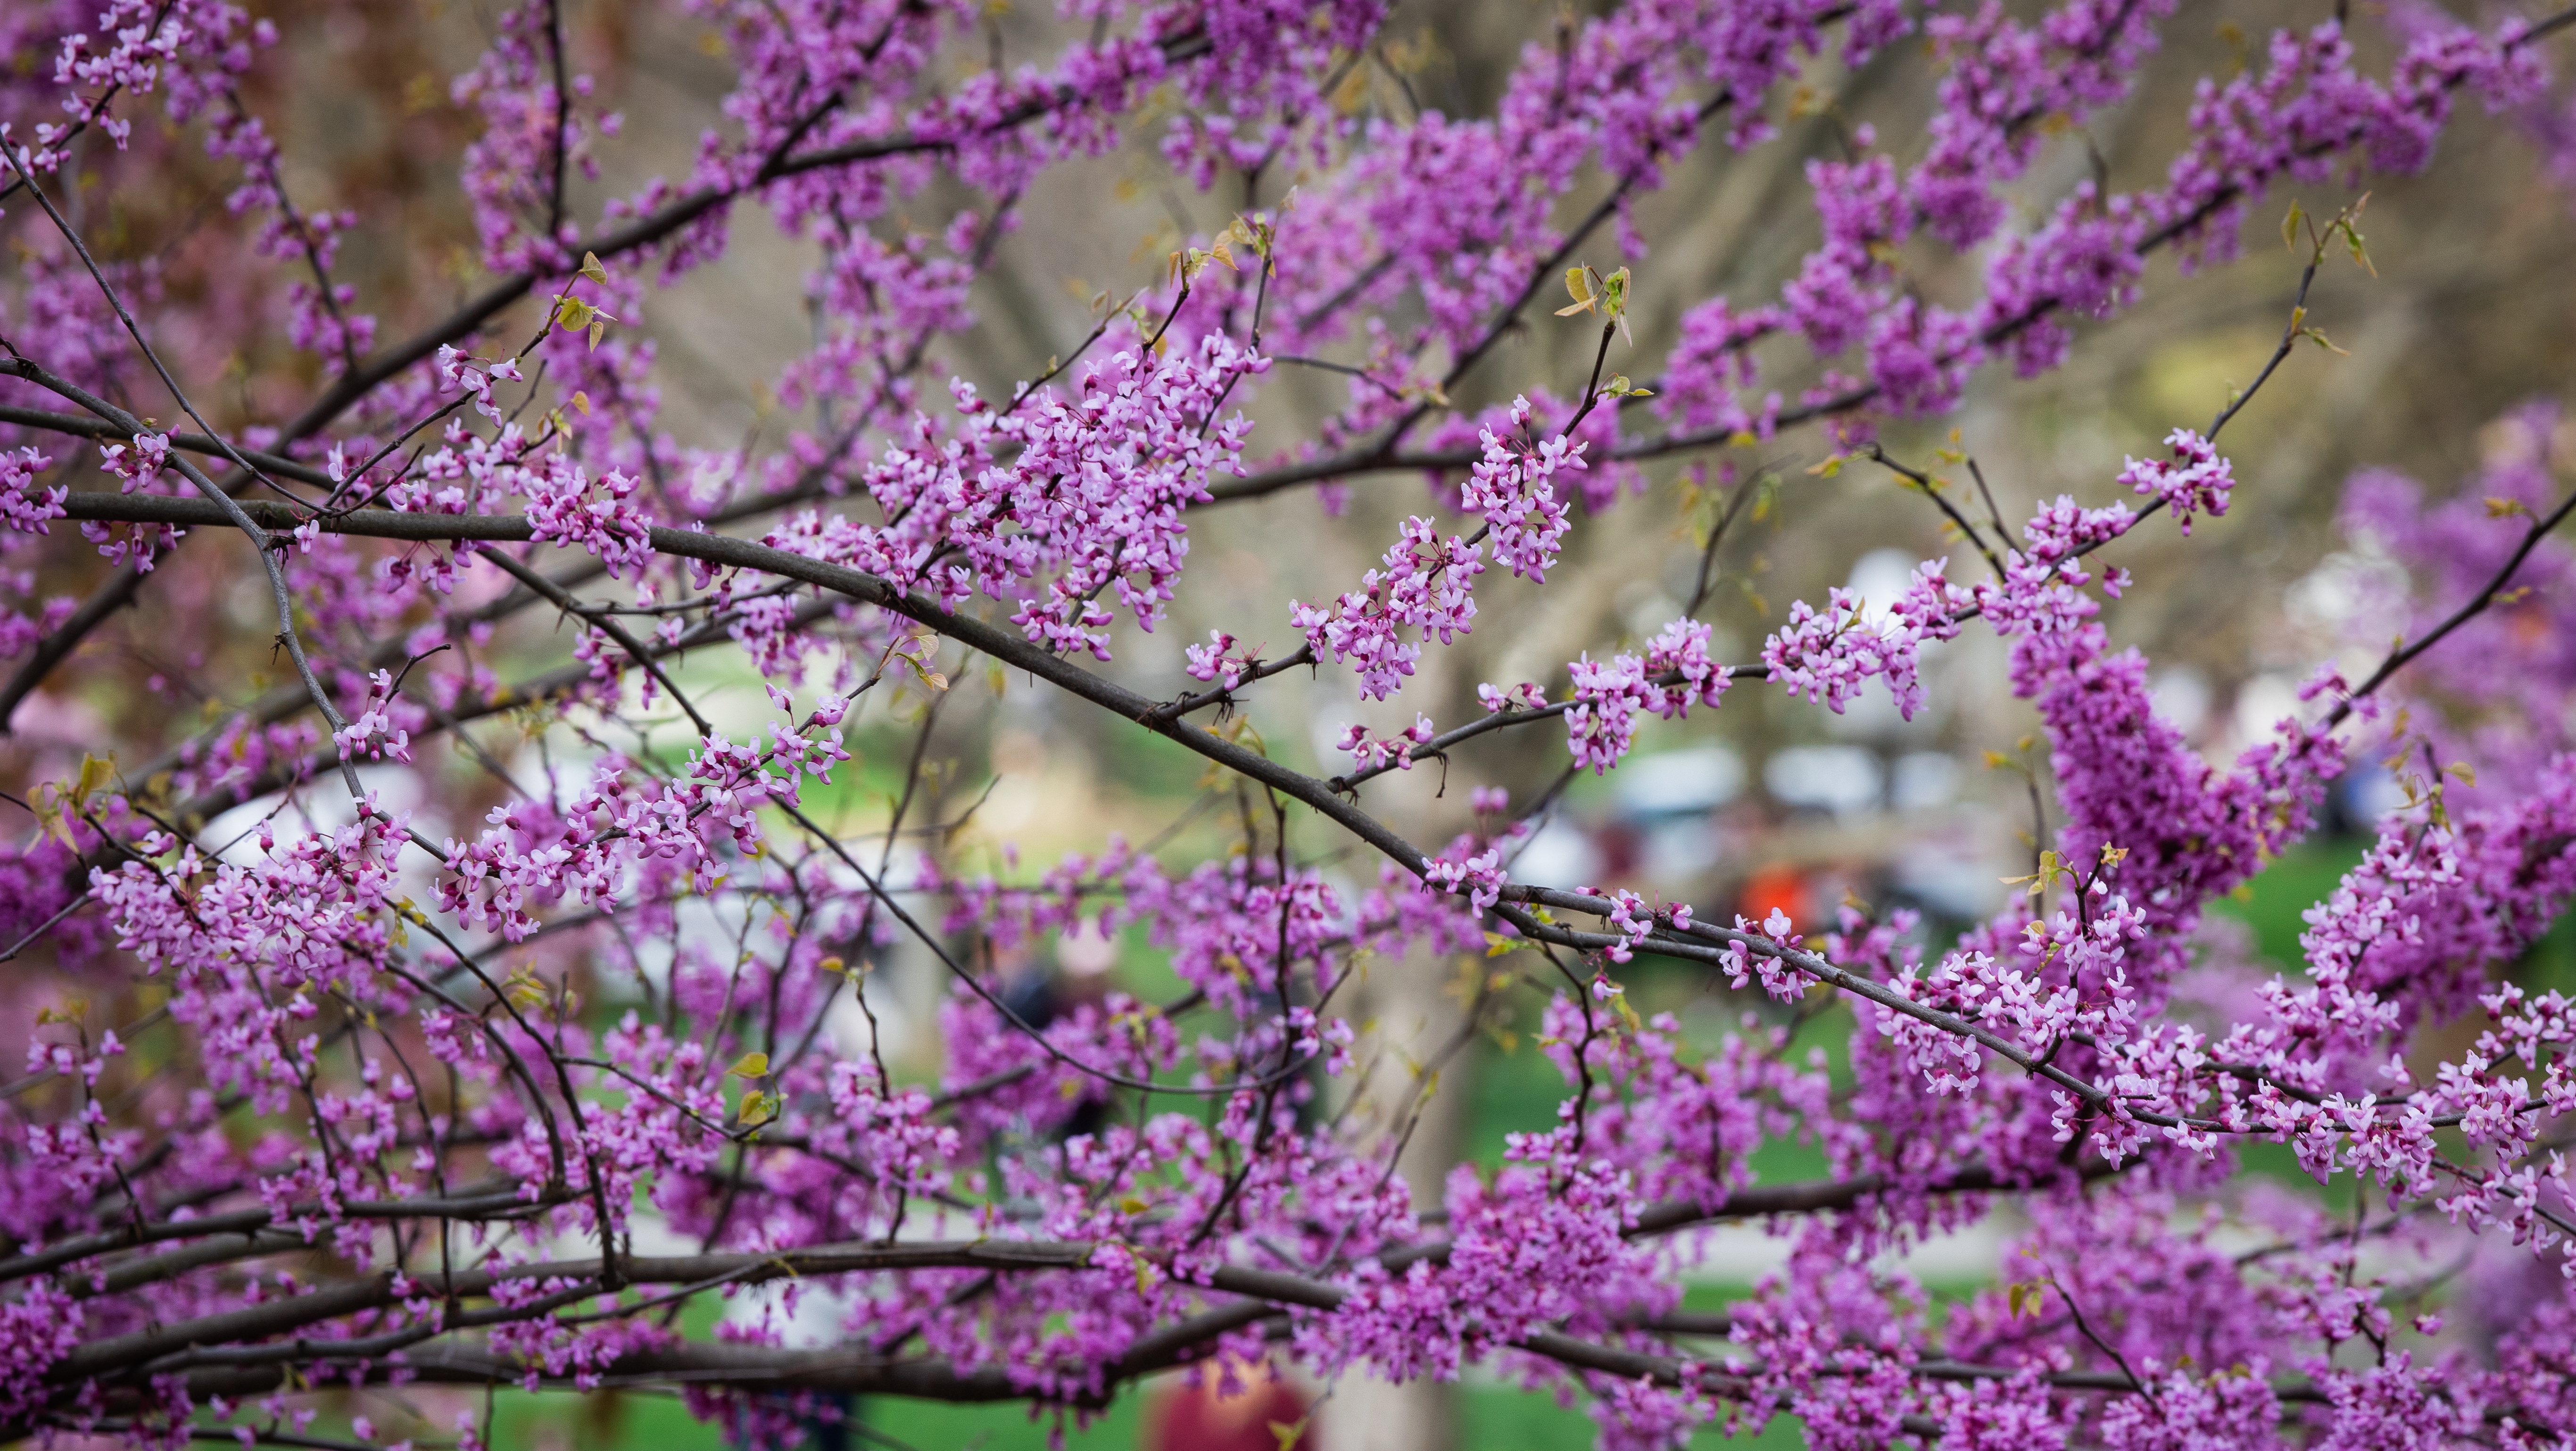 Spring flowers blooming, Blacksburg campus